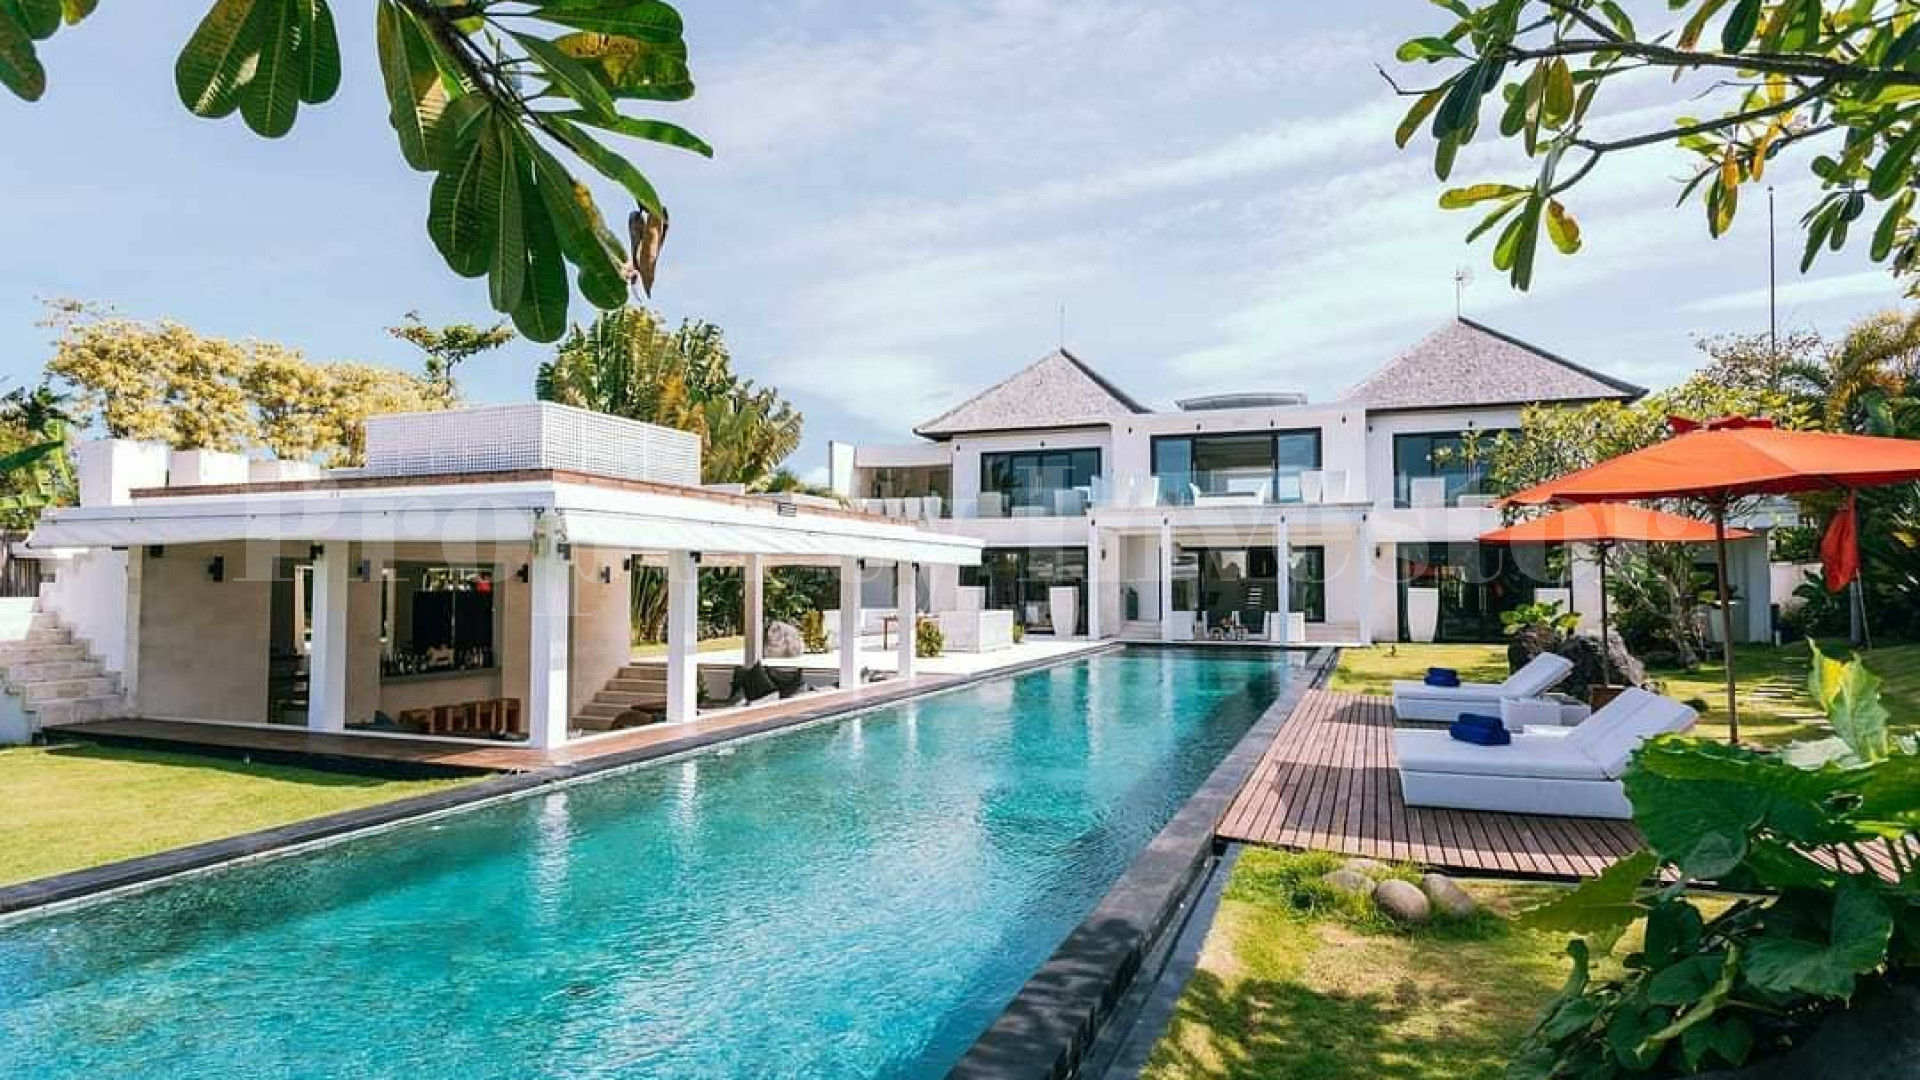 Impressive 5 Bedroom Contemporary Luxury Villa for Sale in Cemagi, Bali